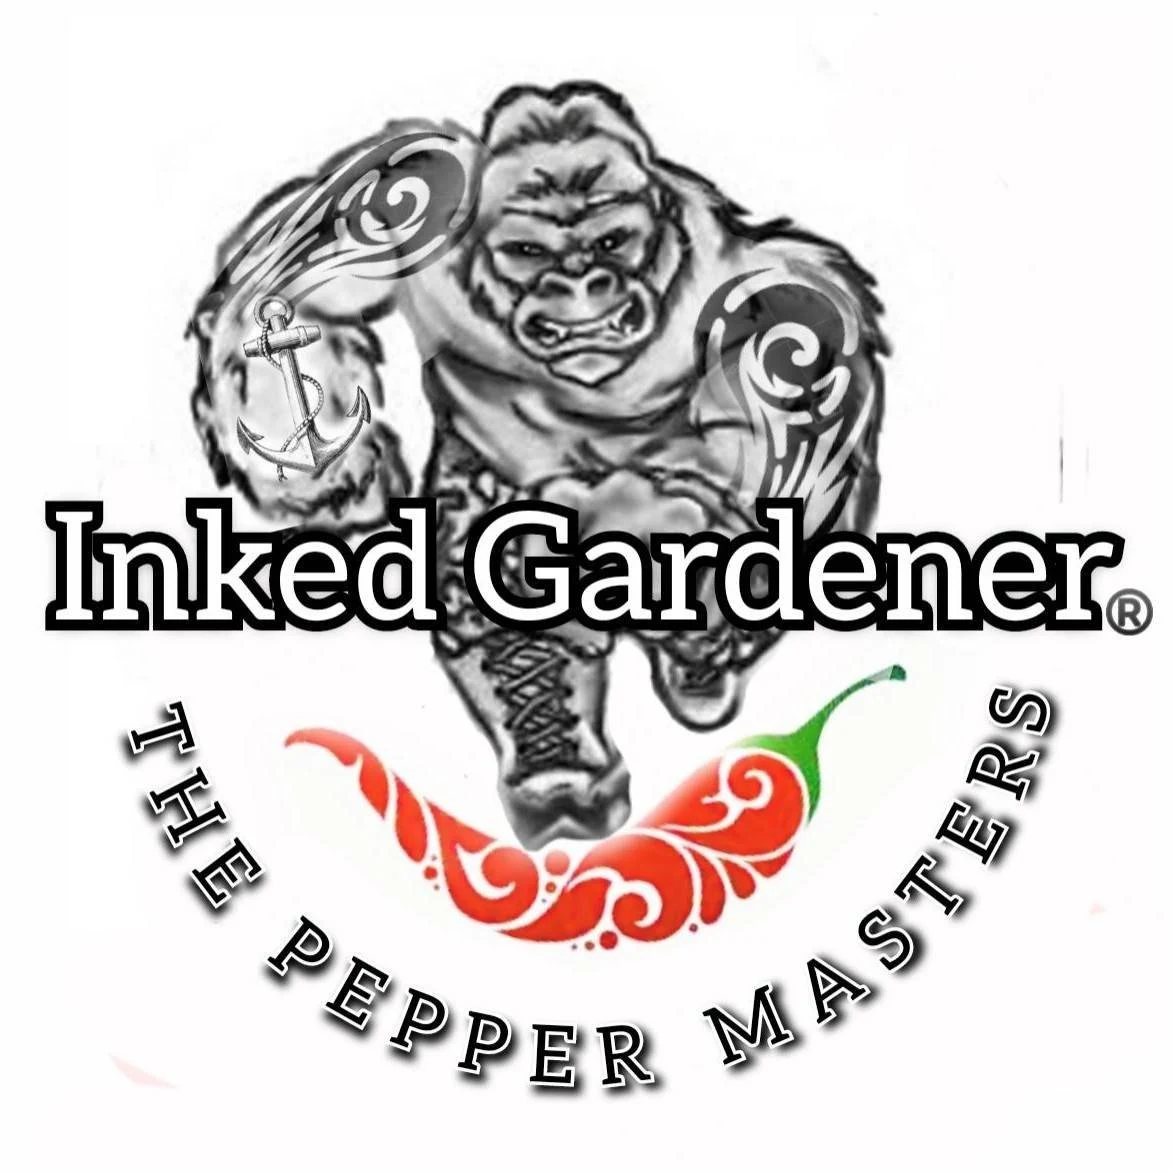 Inked Gardener